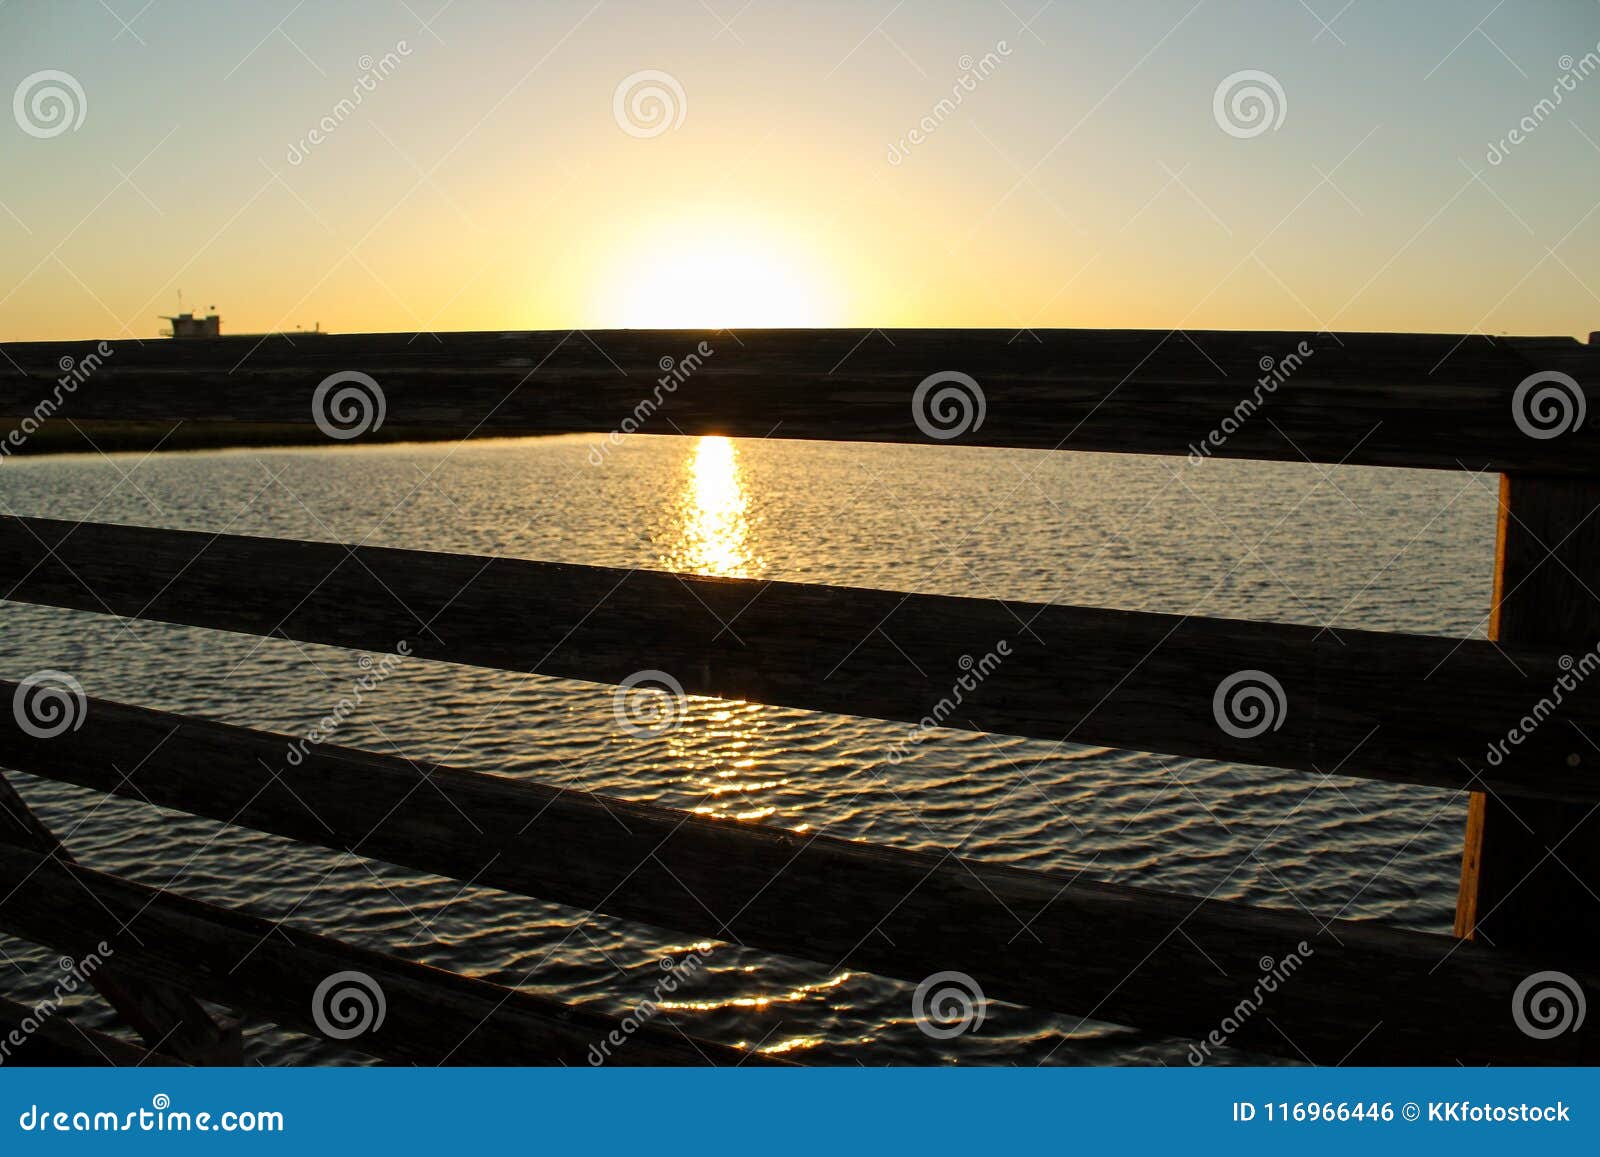 sunset at bolsa chica wetlands through a wooden bridge